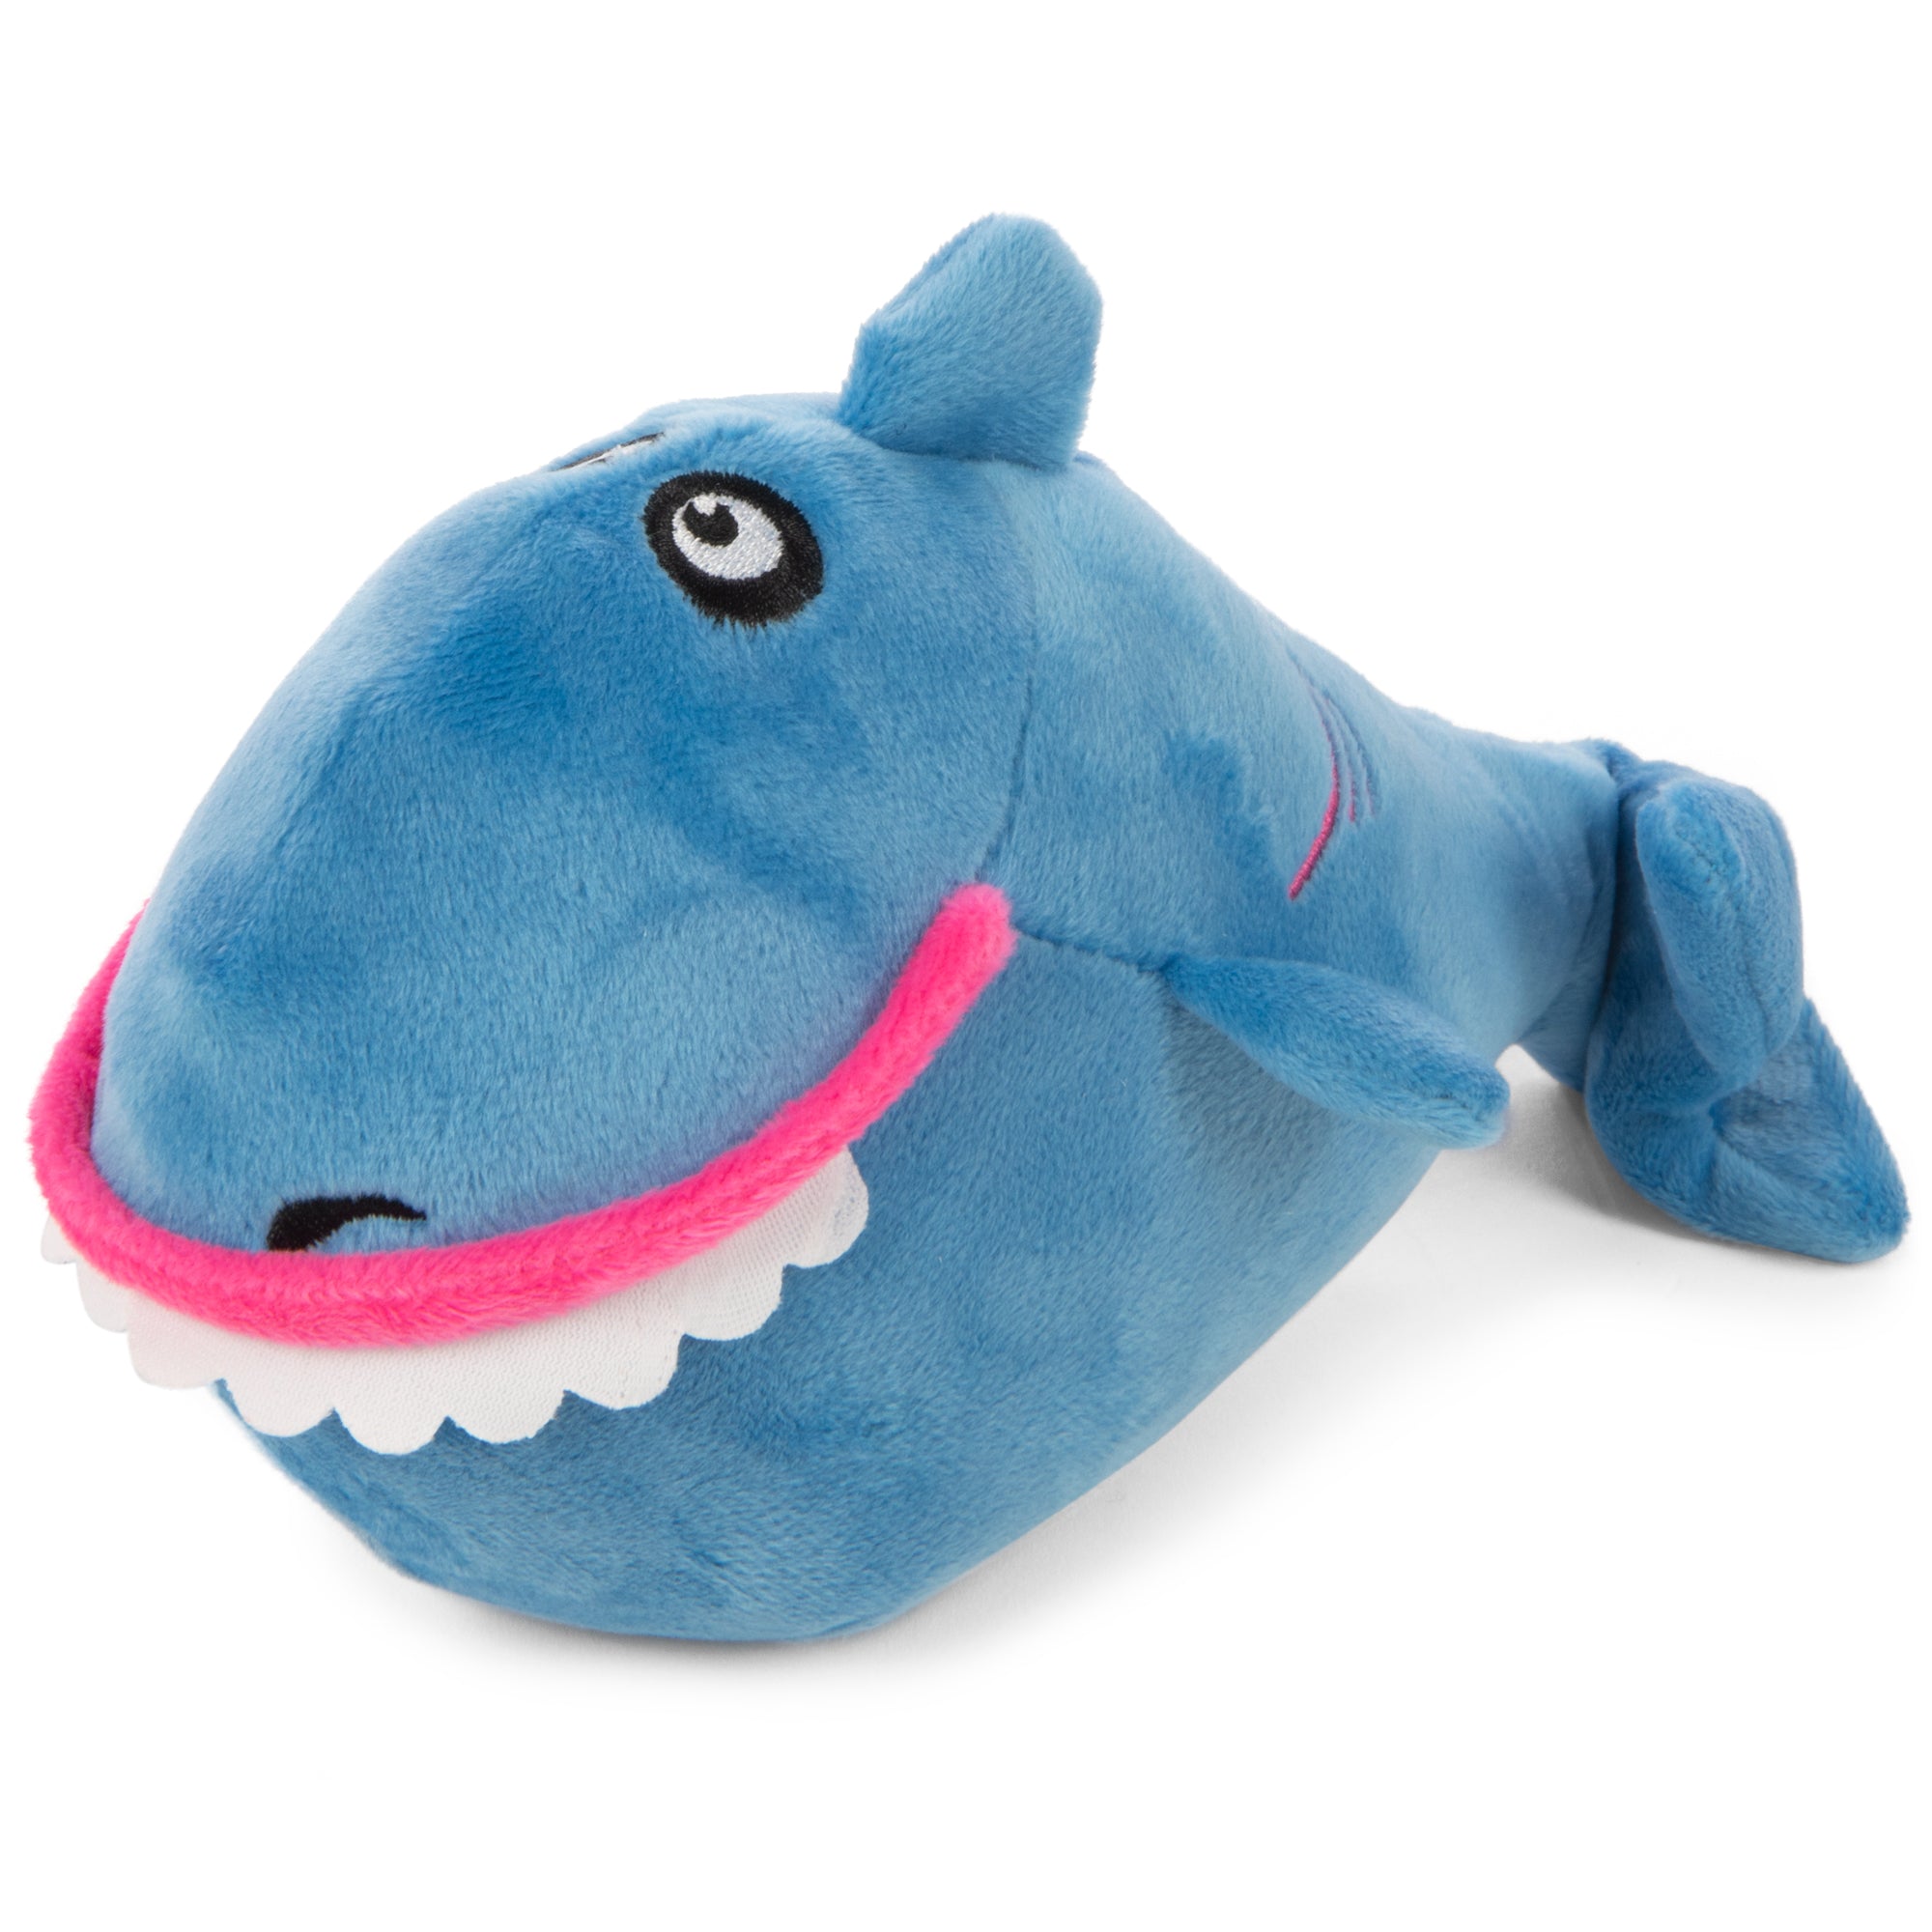 goDog Action Plus Animated Shark Squeaky Plush Dog Toy